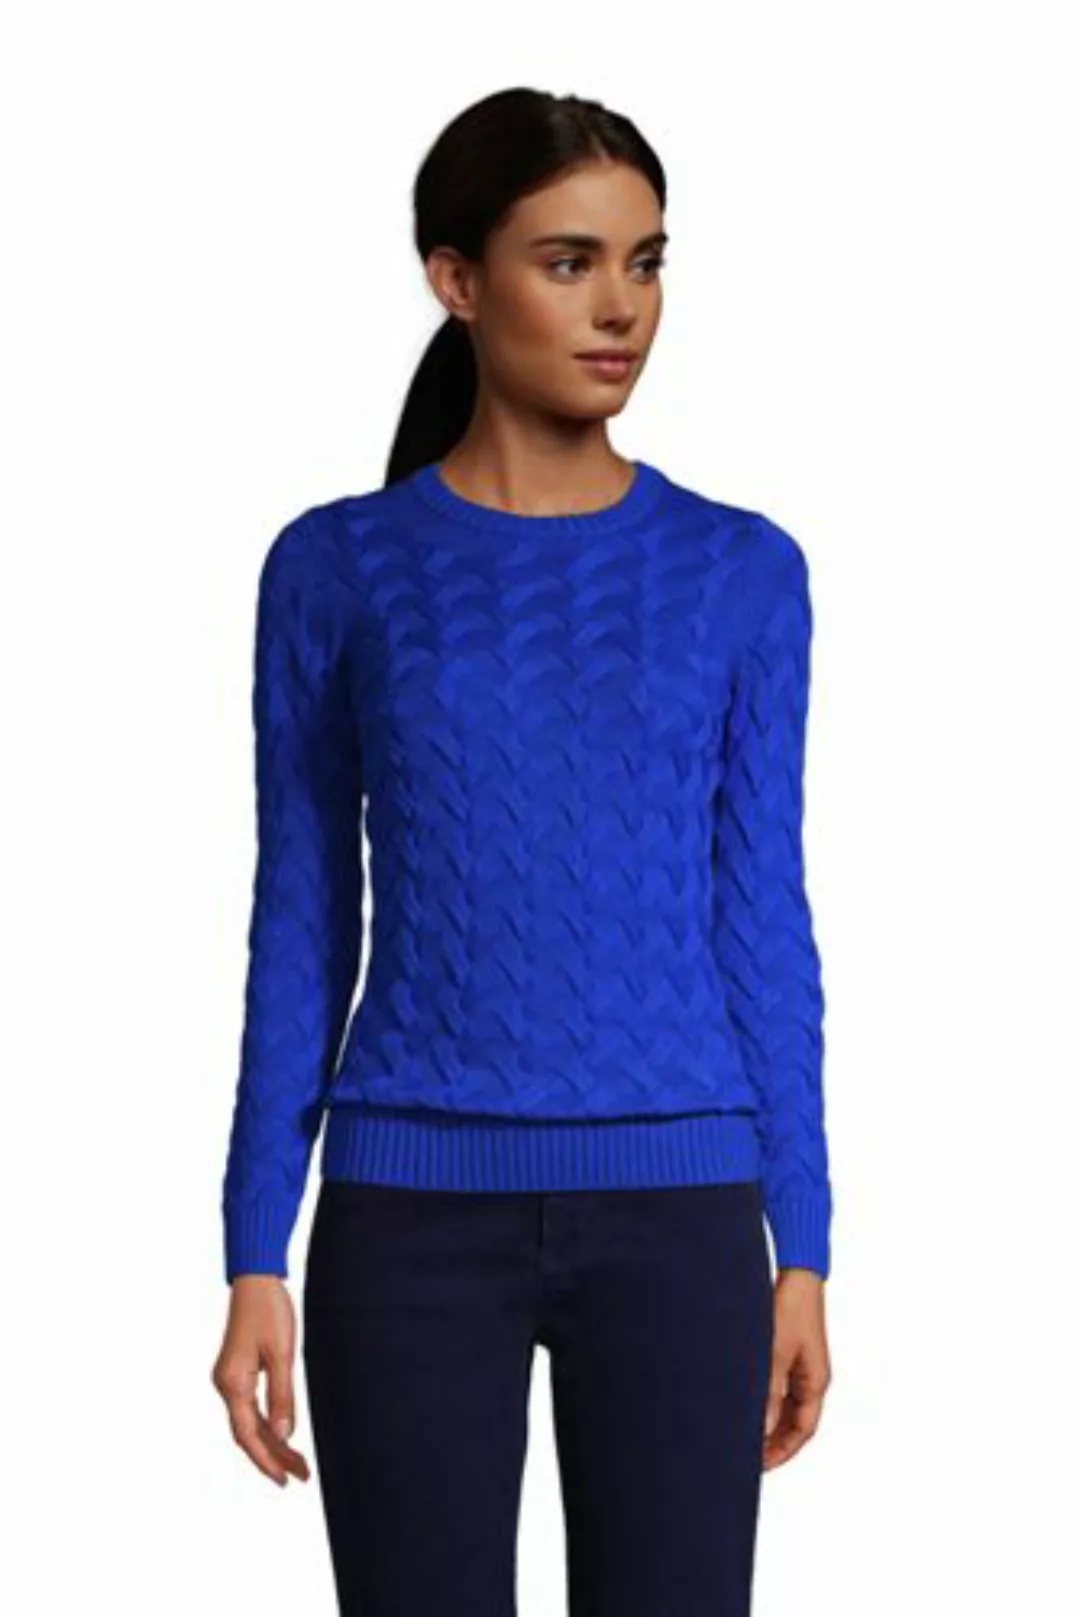 Zopfmuster-Pullover DRIFTER in Petite-Größe, Damen, Größe: L Petite, Blau, günstig online kaufen